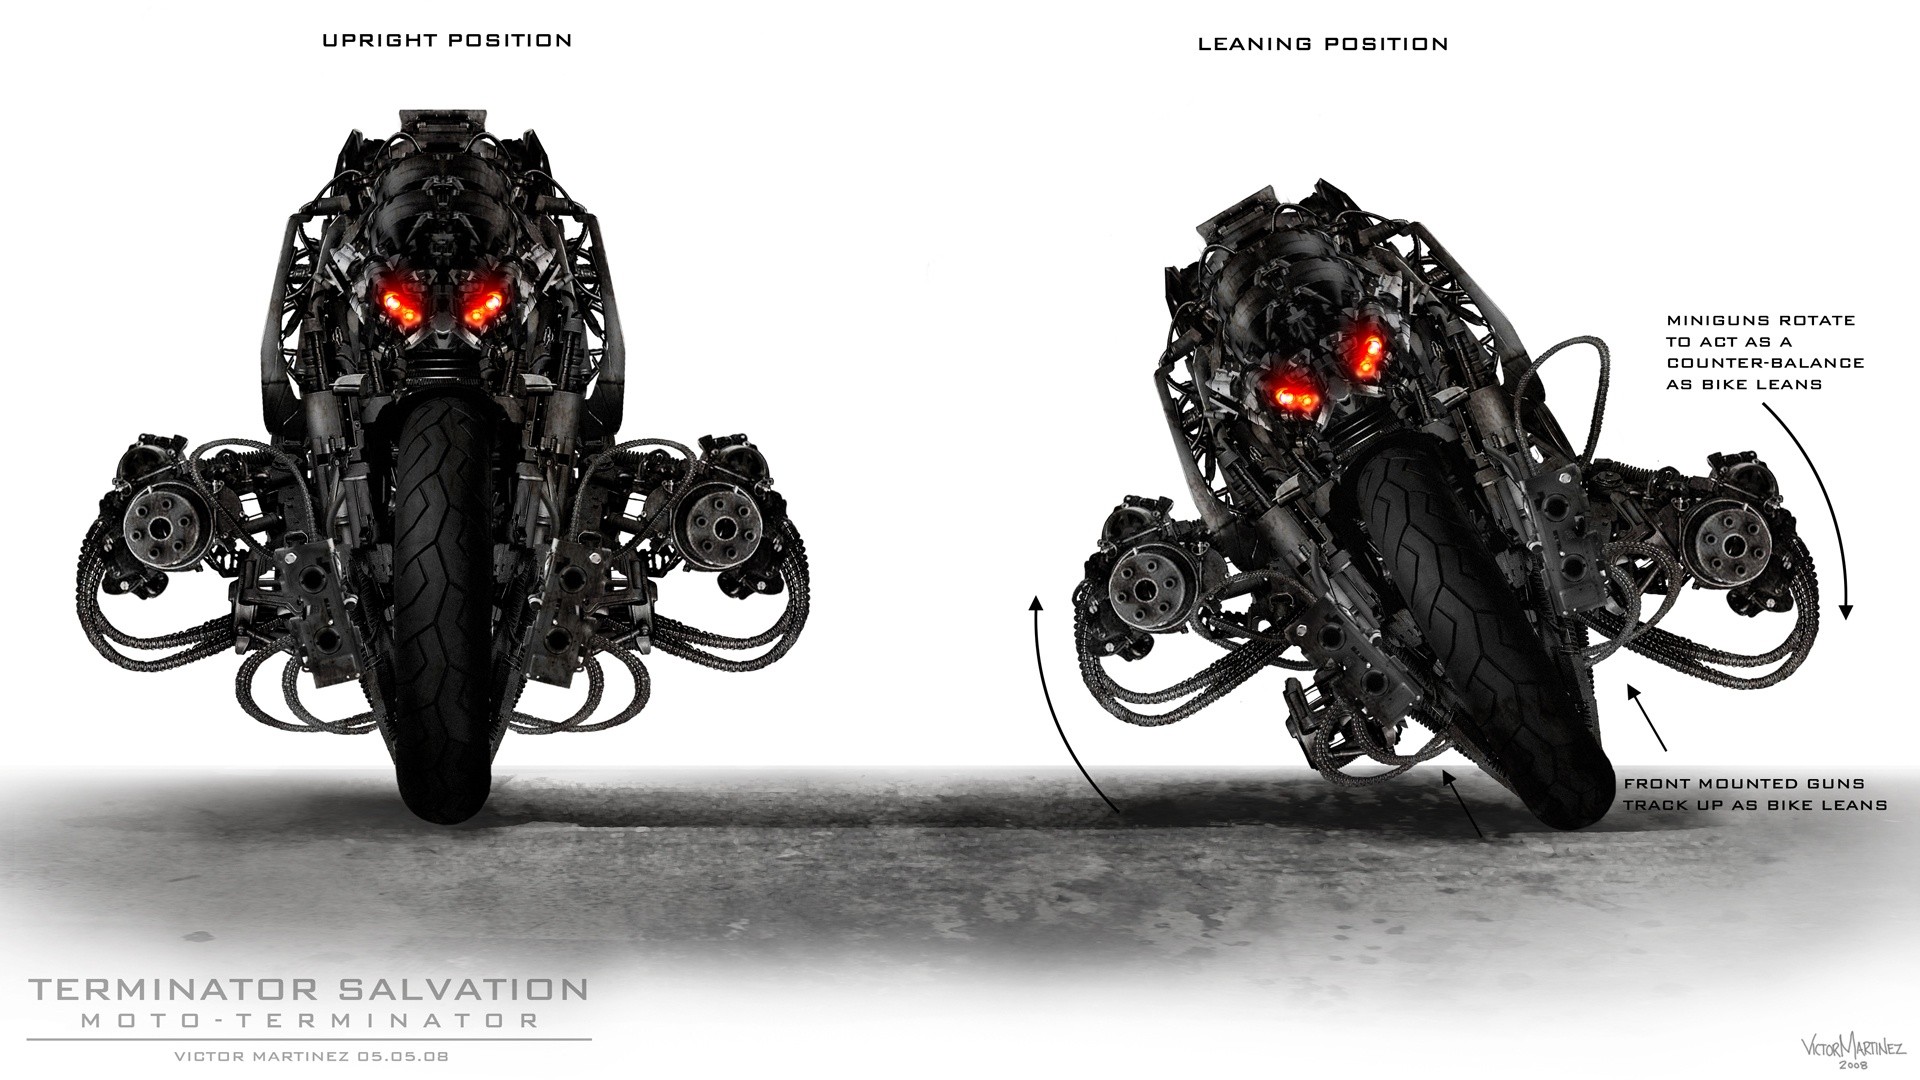 Terminator Salvation Motorcycle M134 Minigun 1920x1080